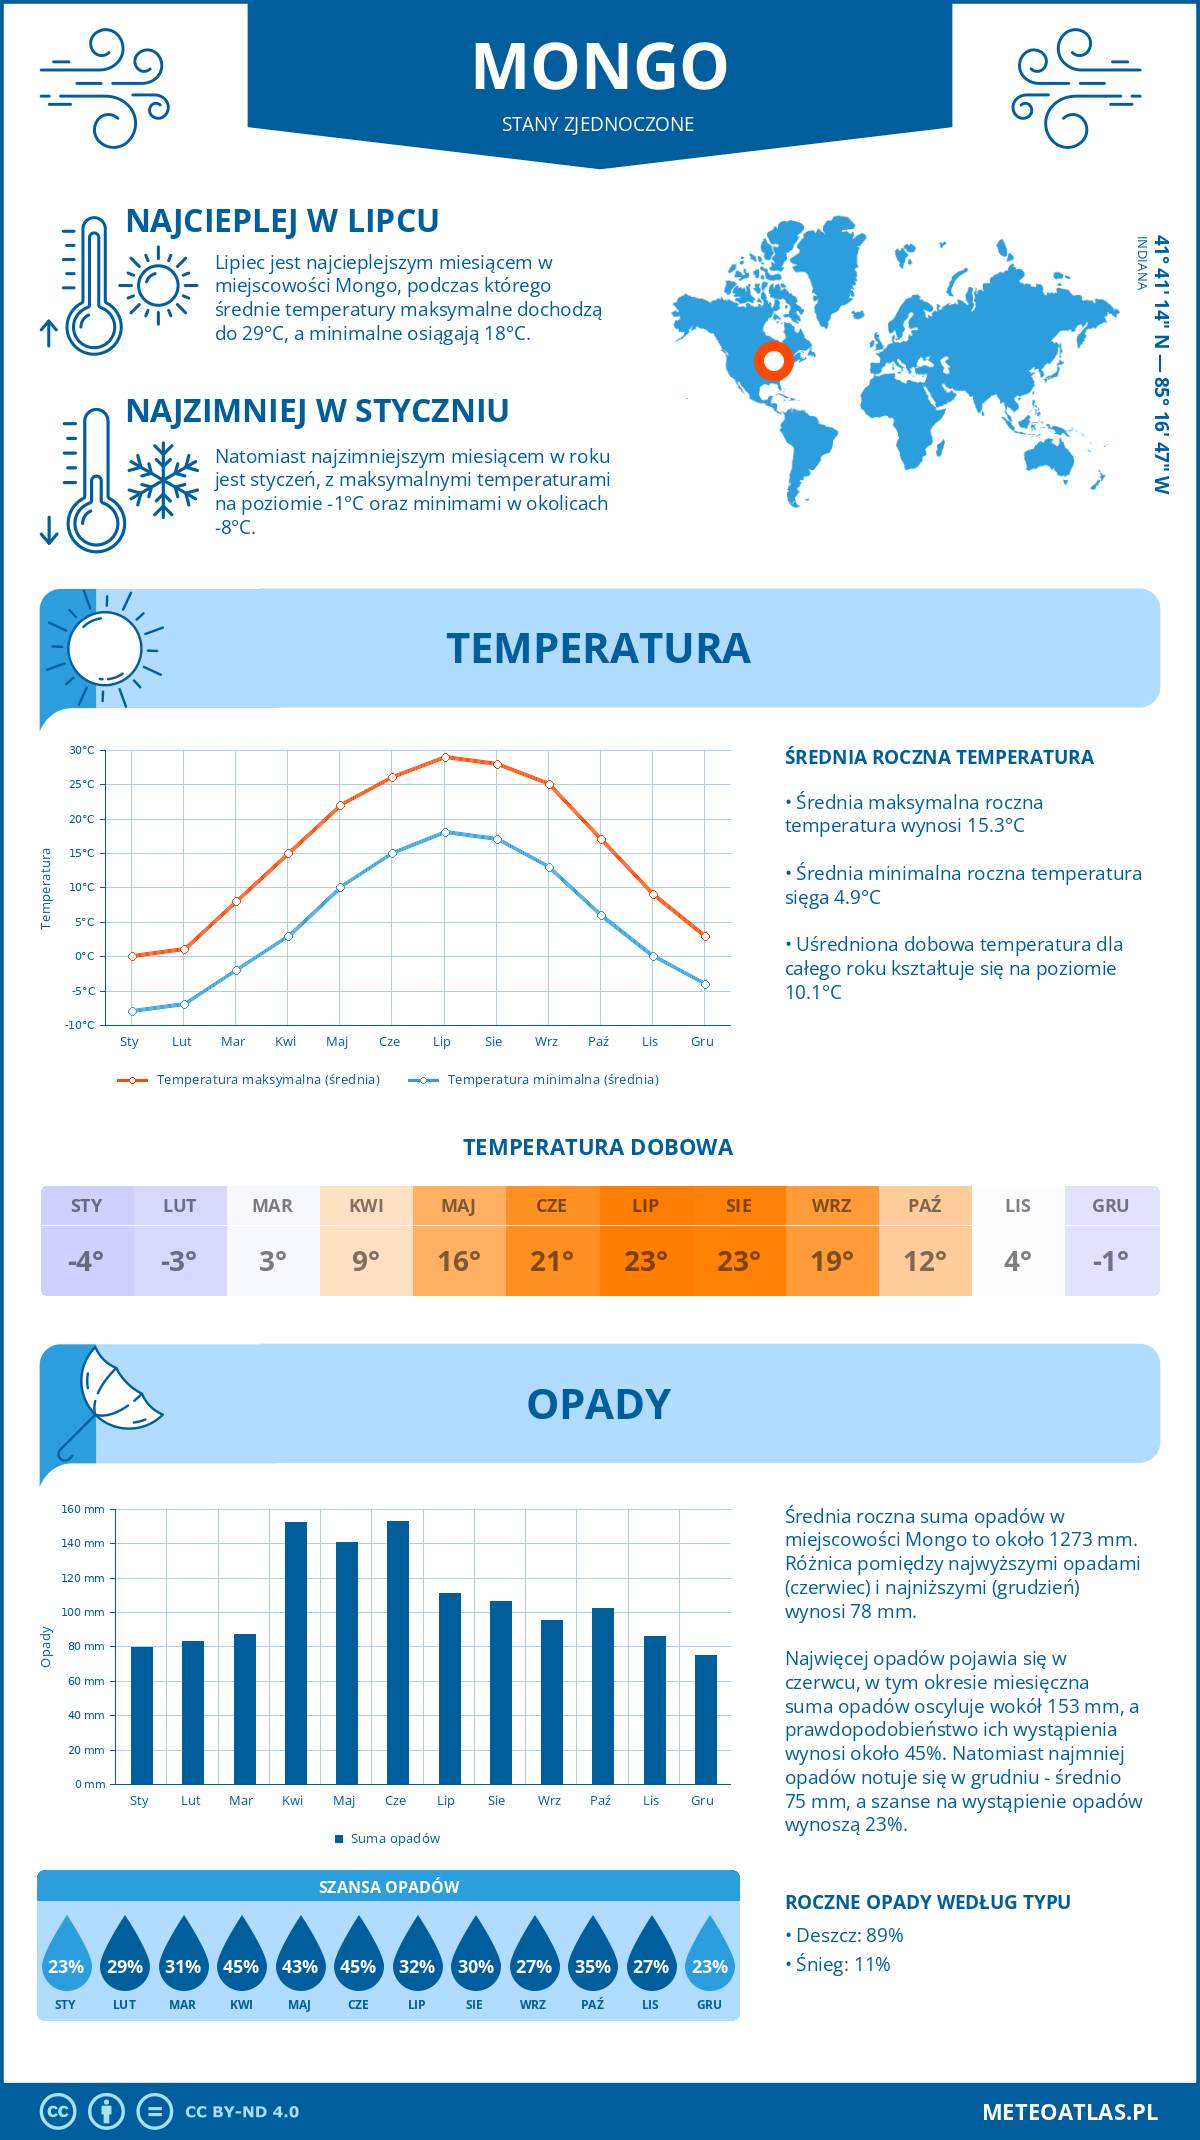 Pogoda Mongo (Stany Zjednoczone). Temperatura oraz opady.